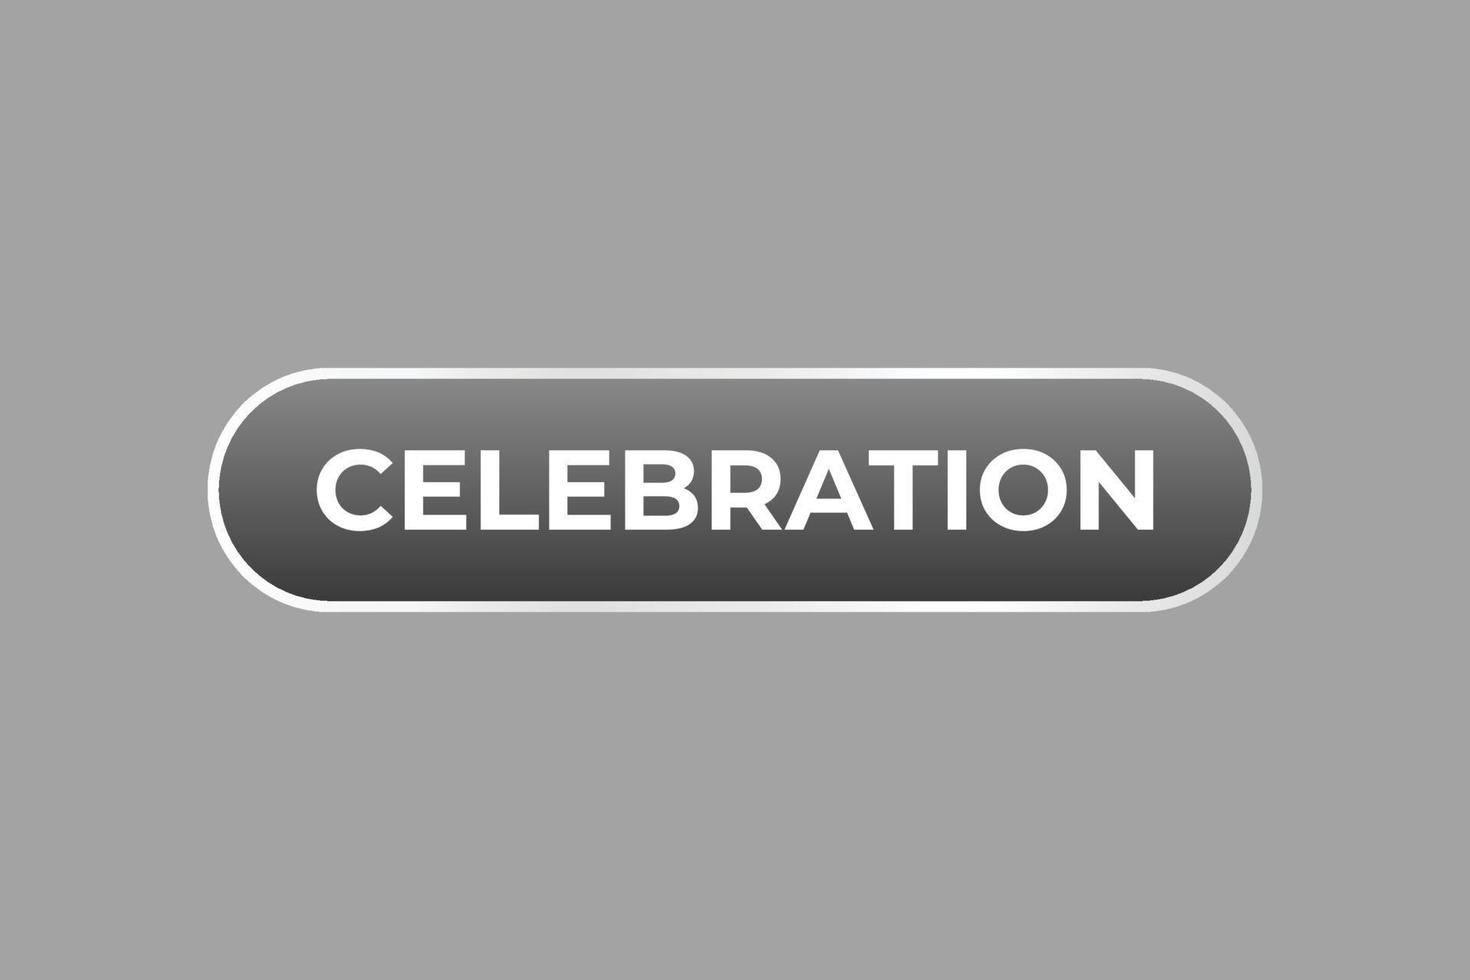 Celebration Button. Speech Bubble, Banner Label Celebration vector